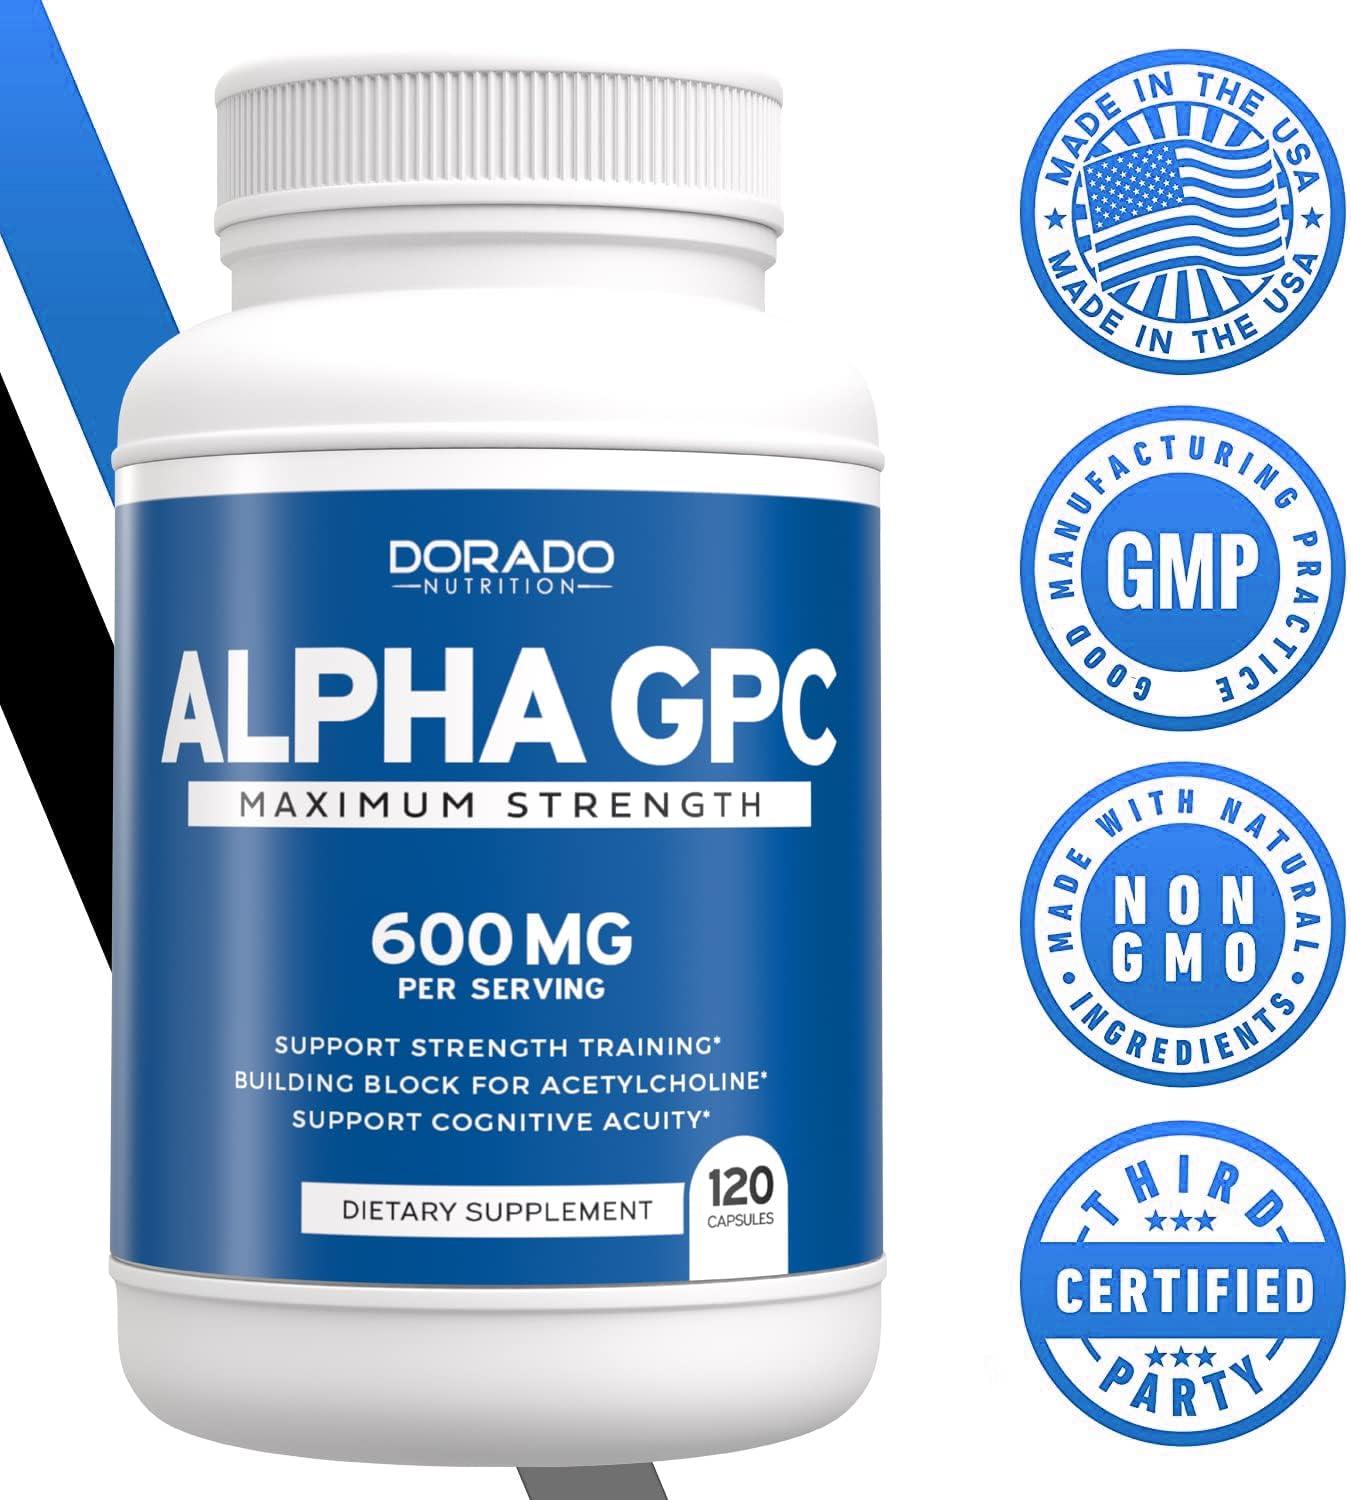 Alpha GPC